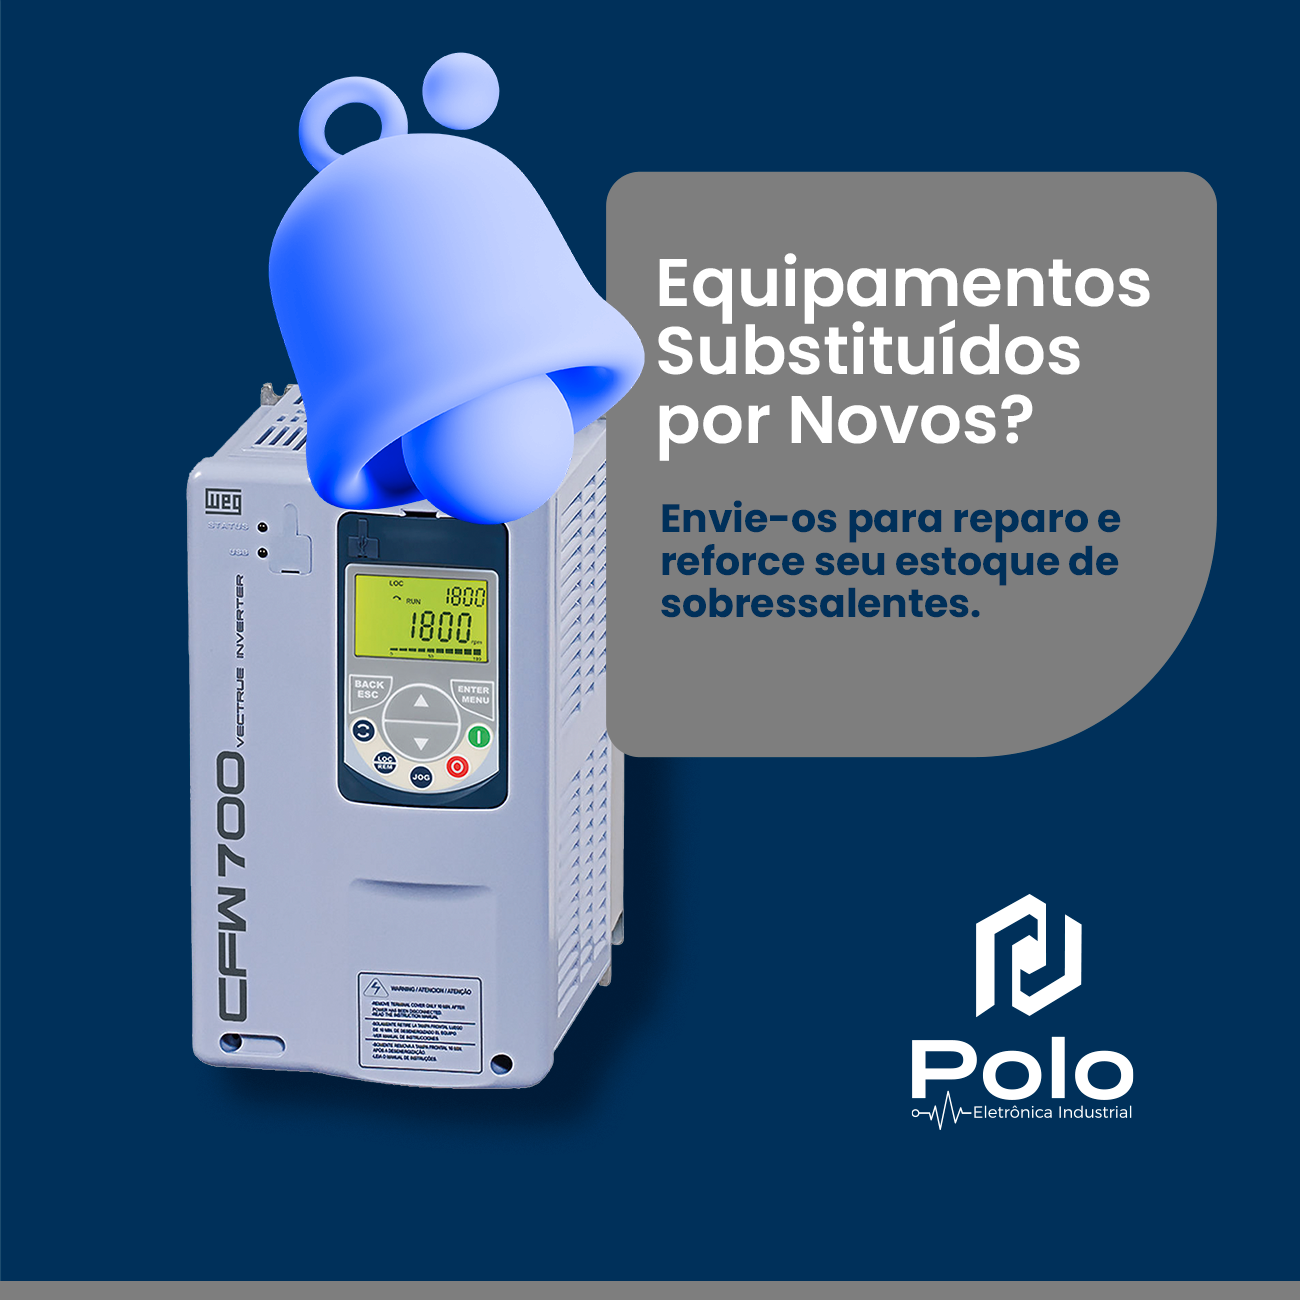 POLO_Post_Equipamentos_Novos